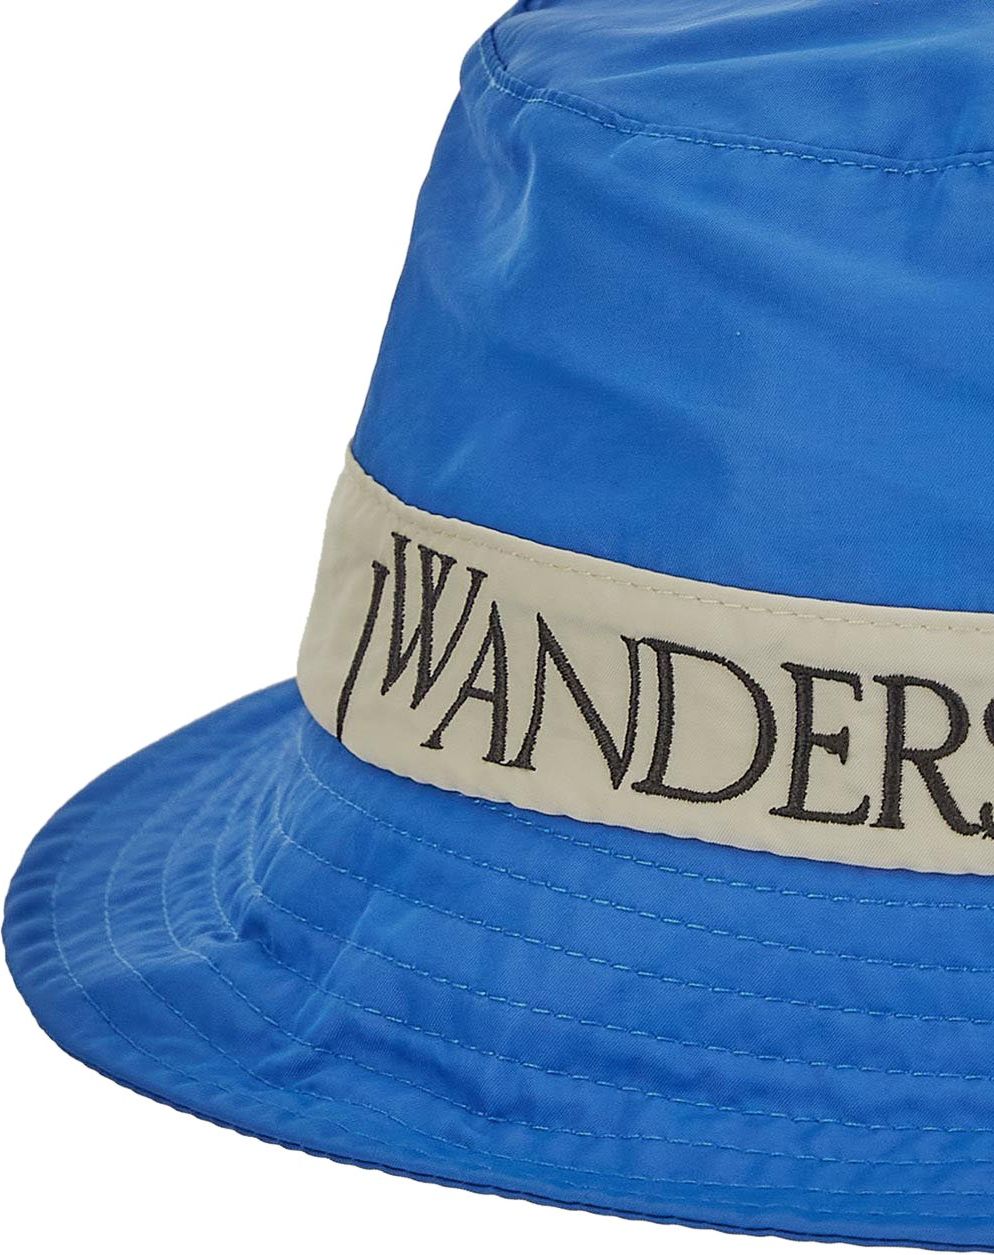 J.W. Anderson Logo Bucket Hat Blauw